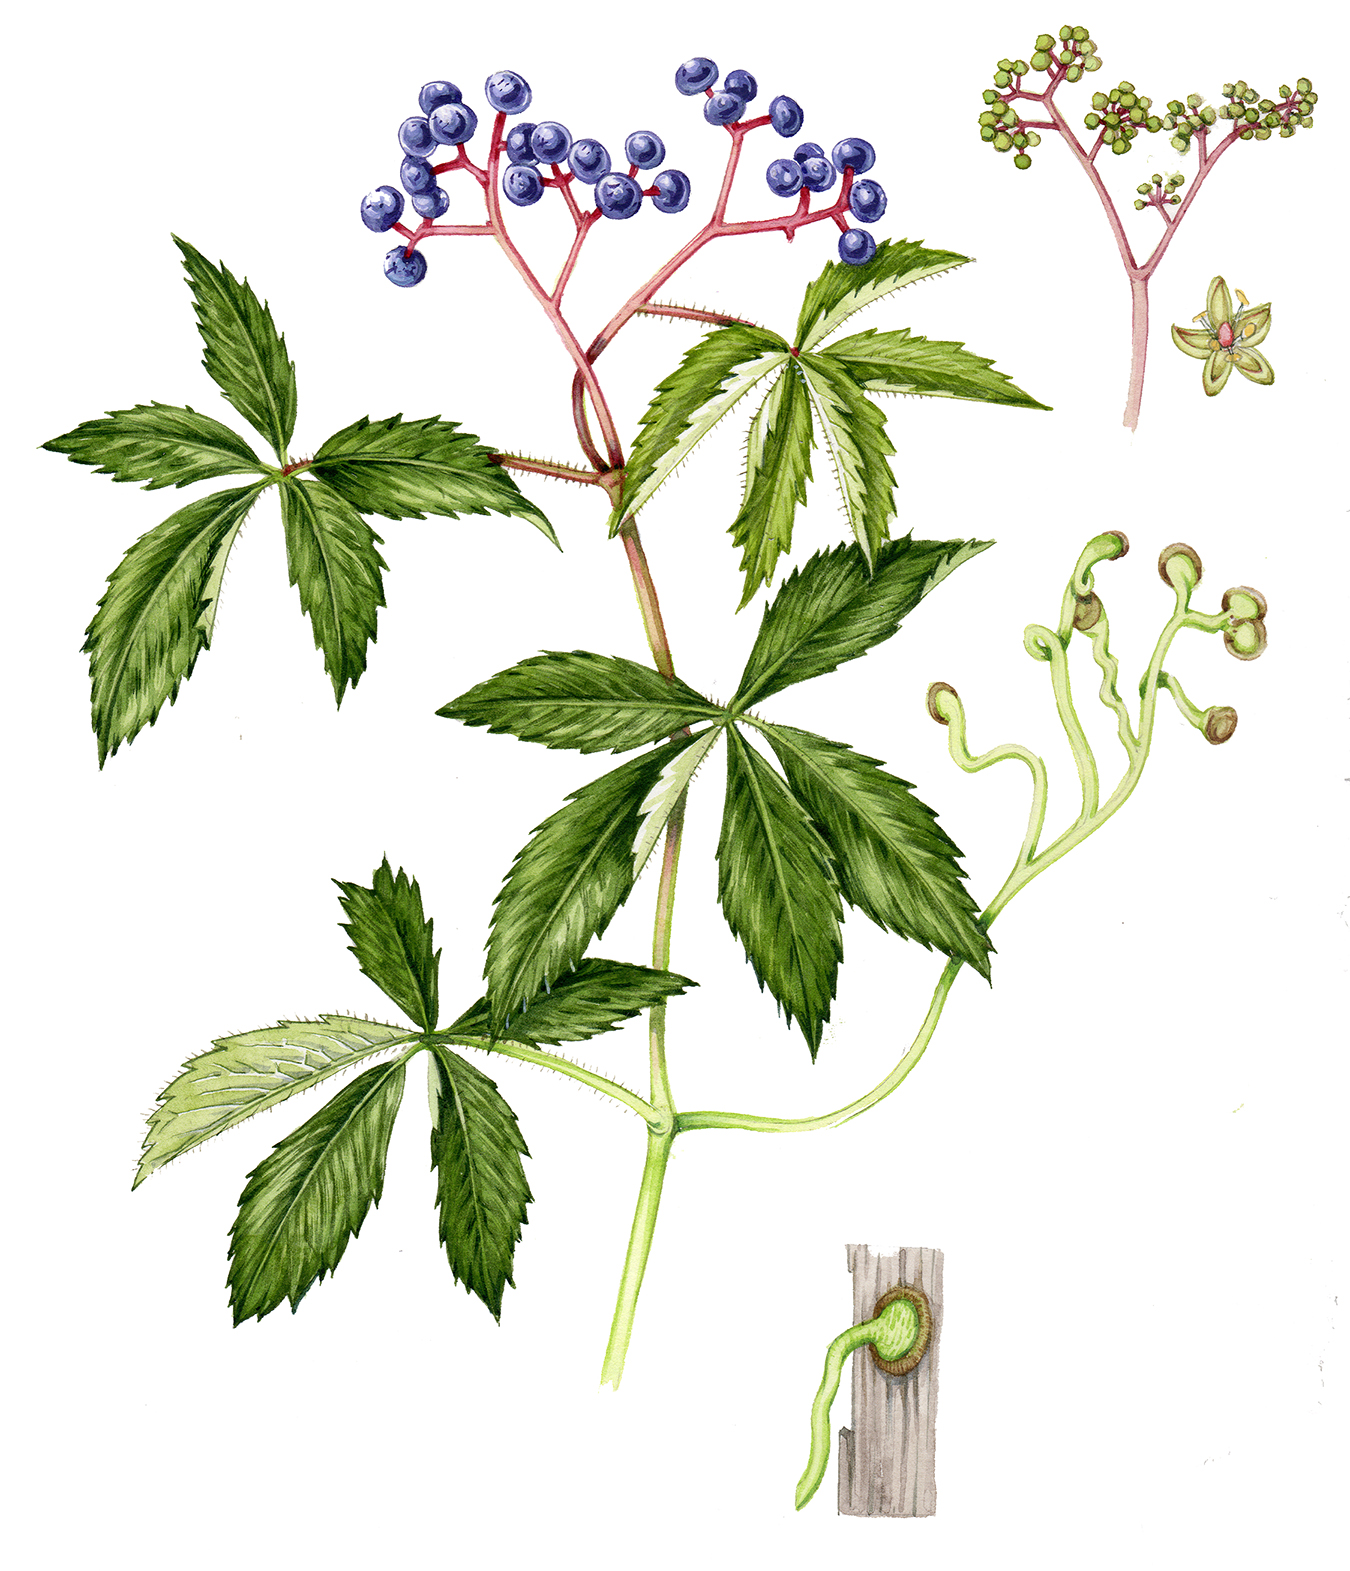 parthenocissus quinquefolia